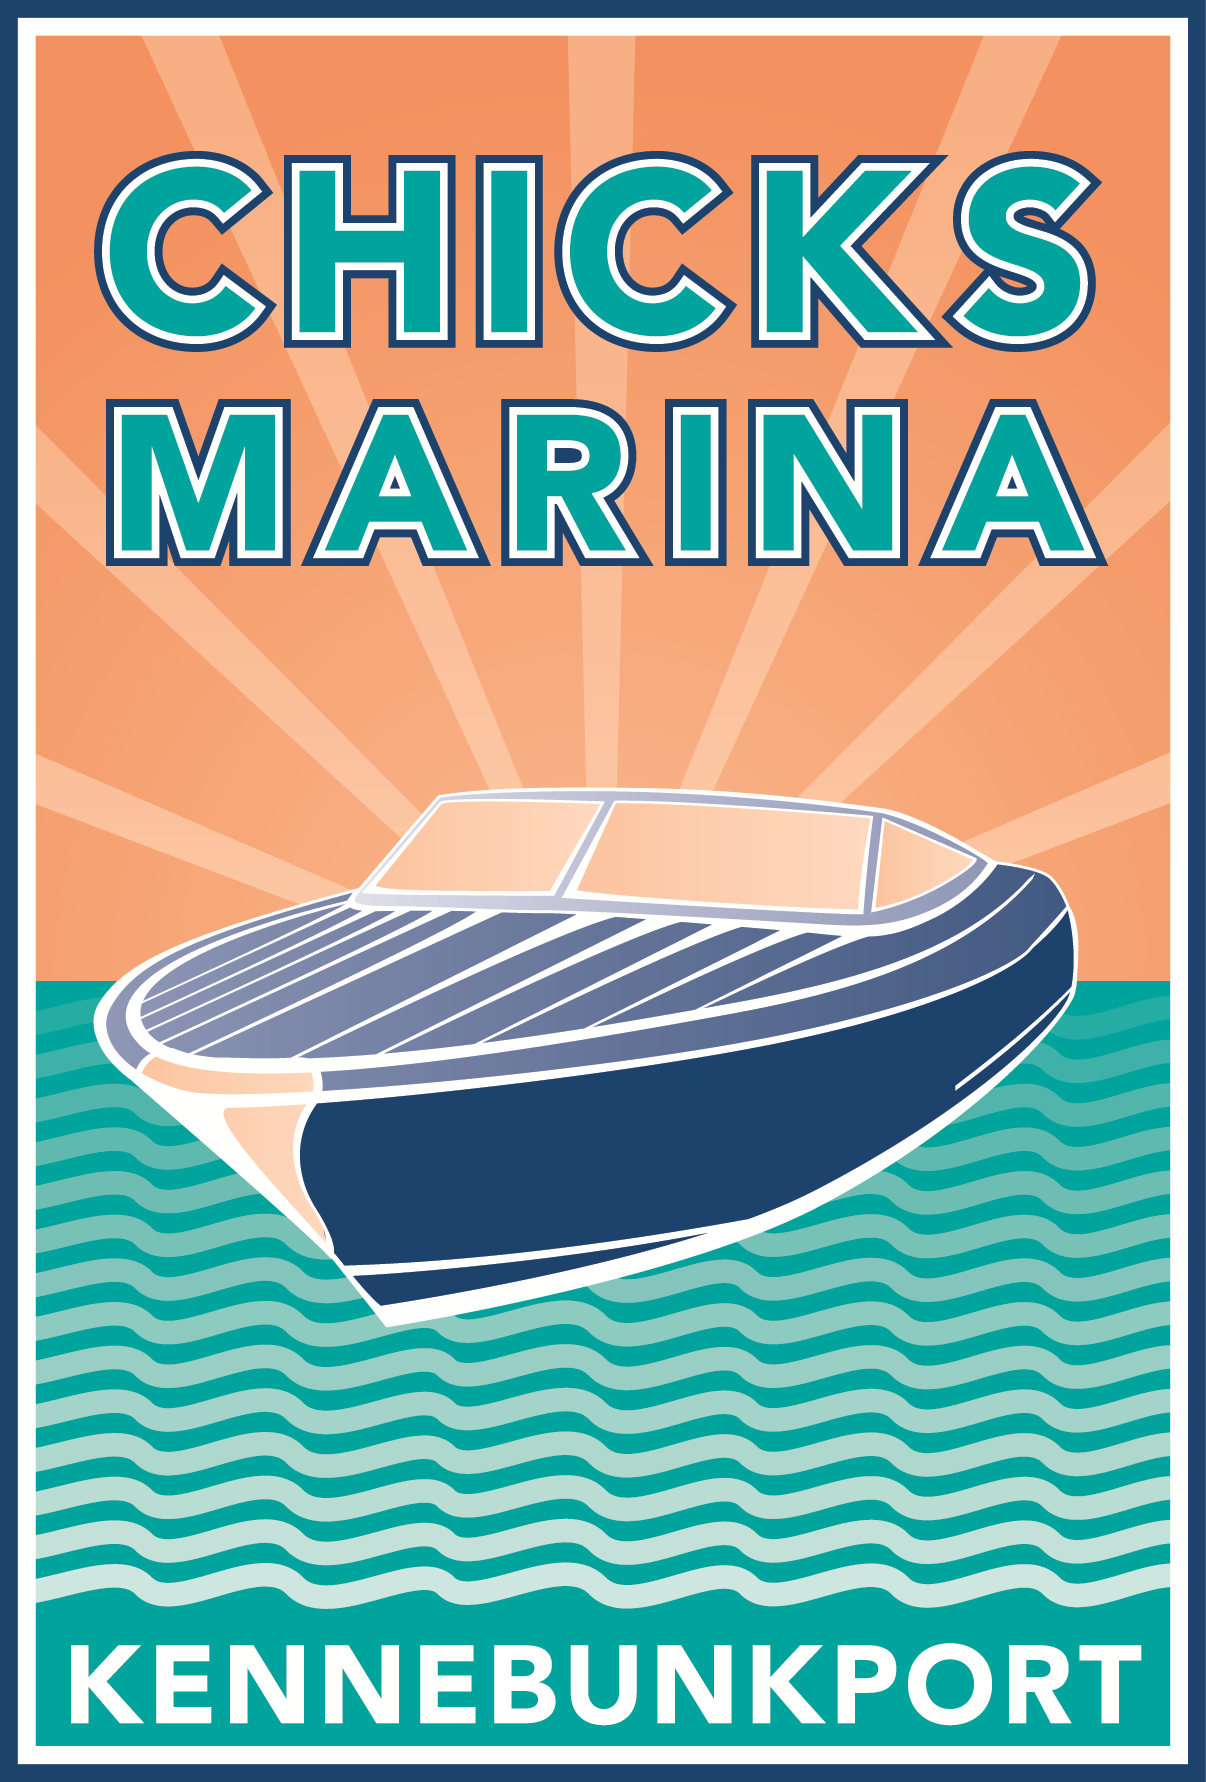 Chick's Marina Logo